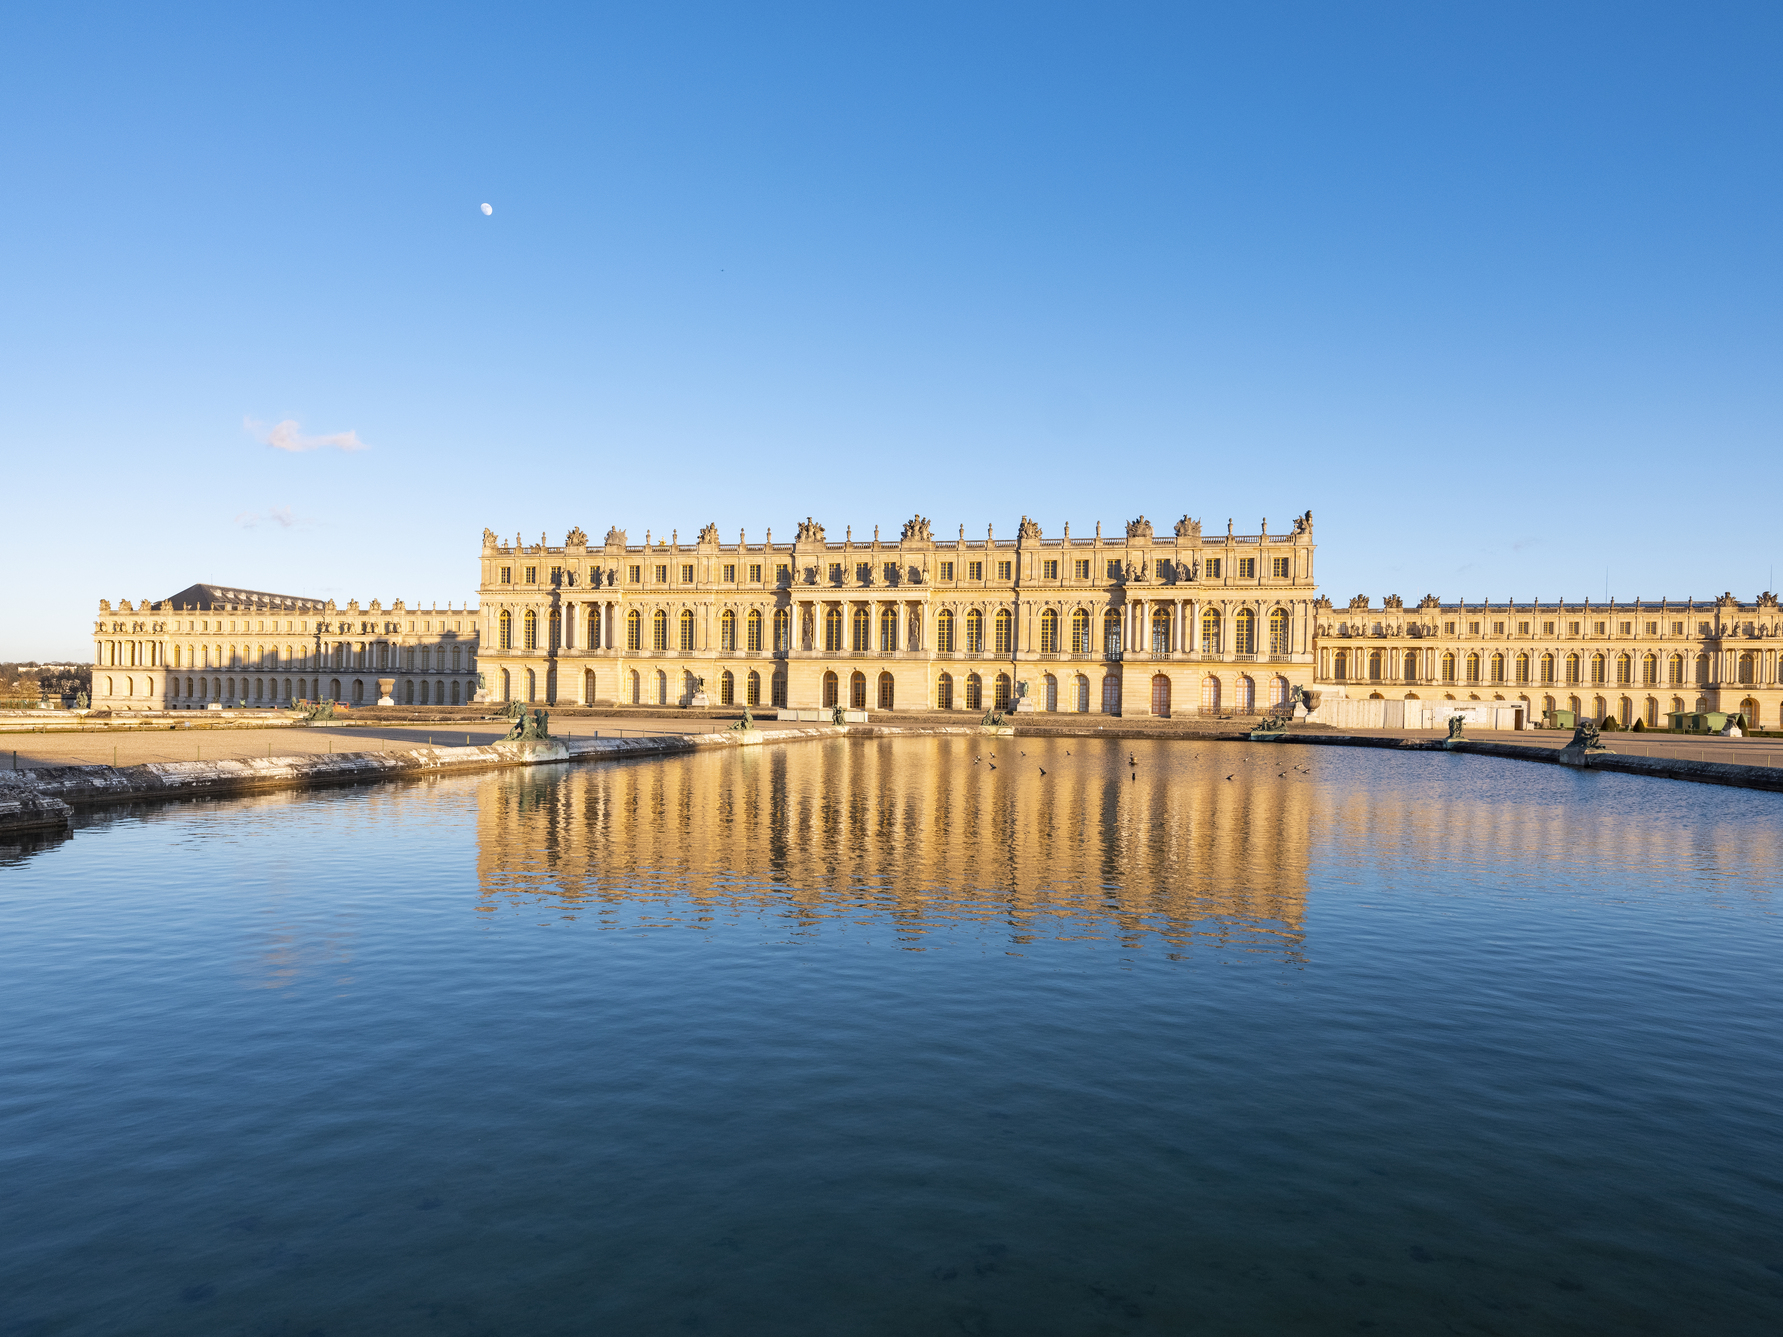 凡爾賽宮宏偉又奢華的建築風格，直接促成了 17、18 世紀的歐洲宮殿修建風潮。